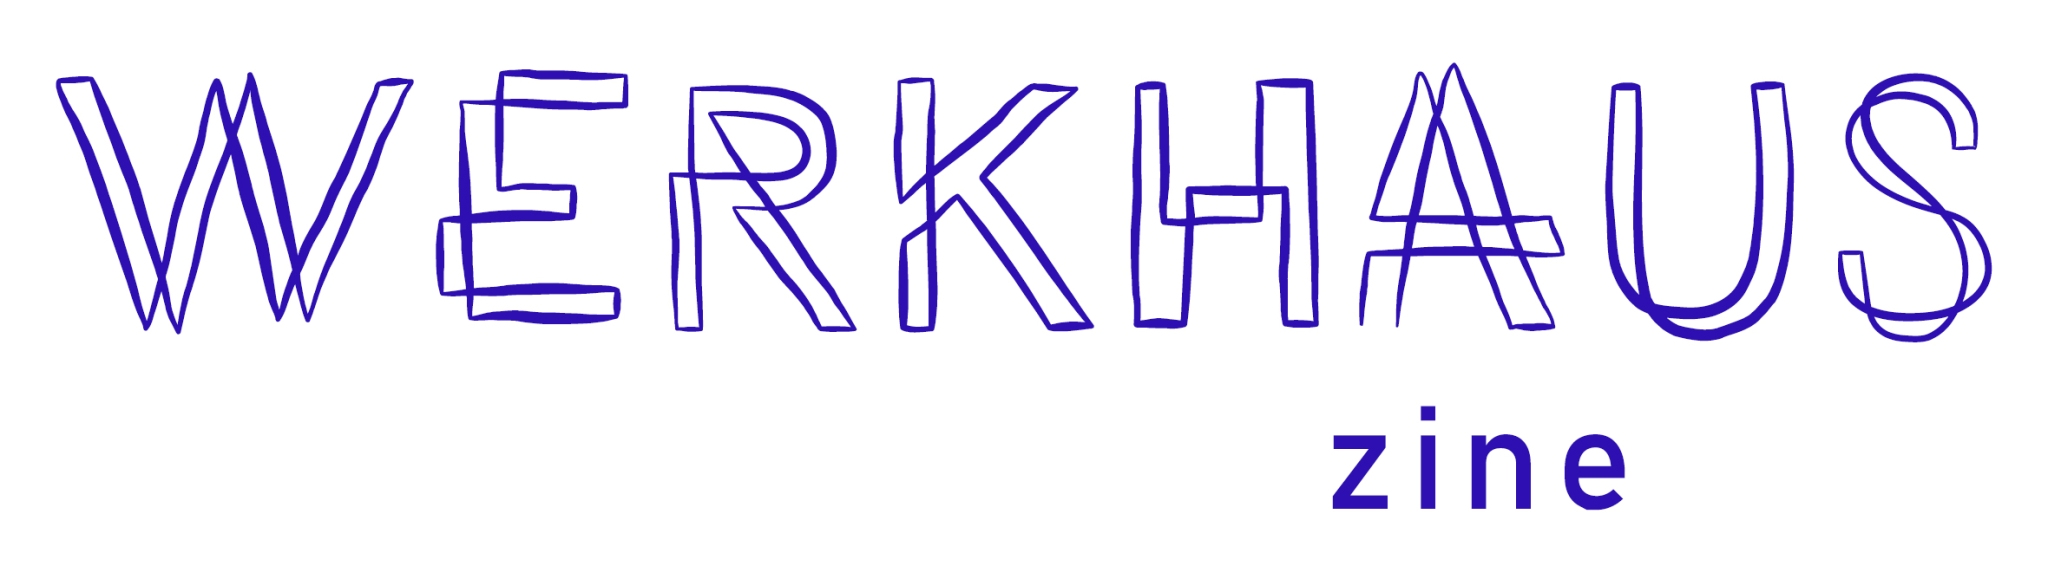 Werkhaus Zine logo